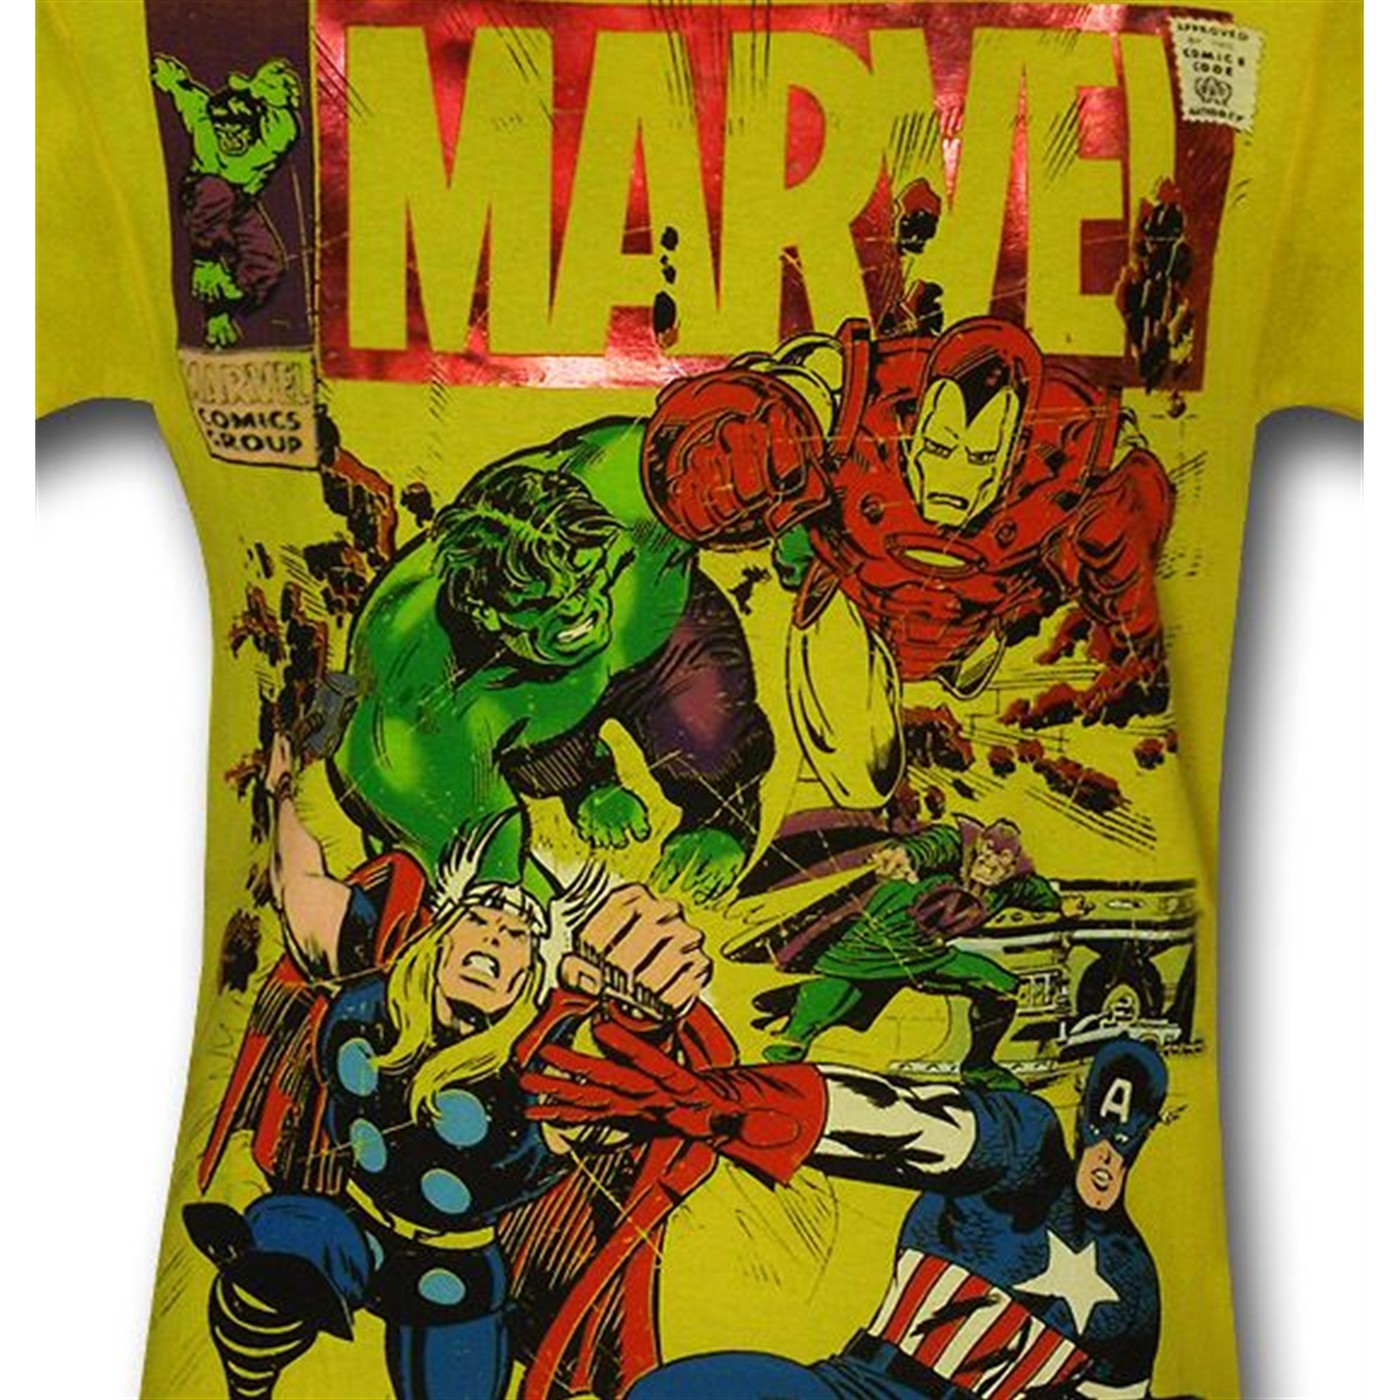 Marvel Comic Cover Rush Yellow T-Shirt